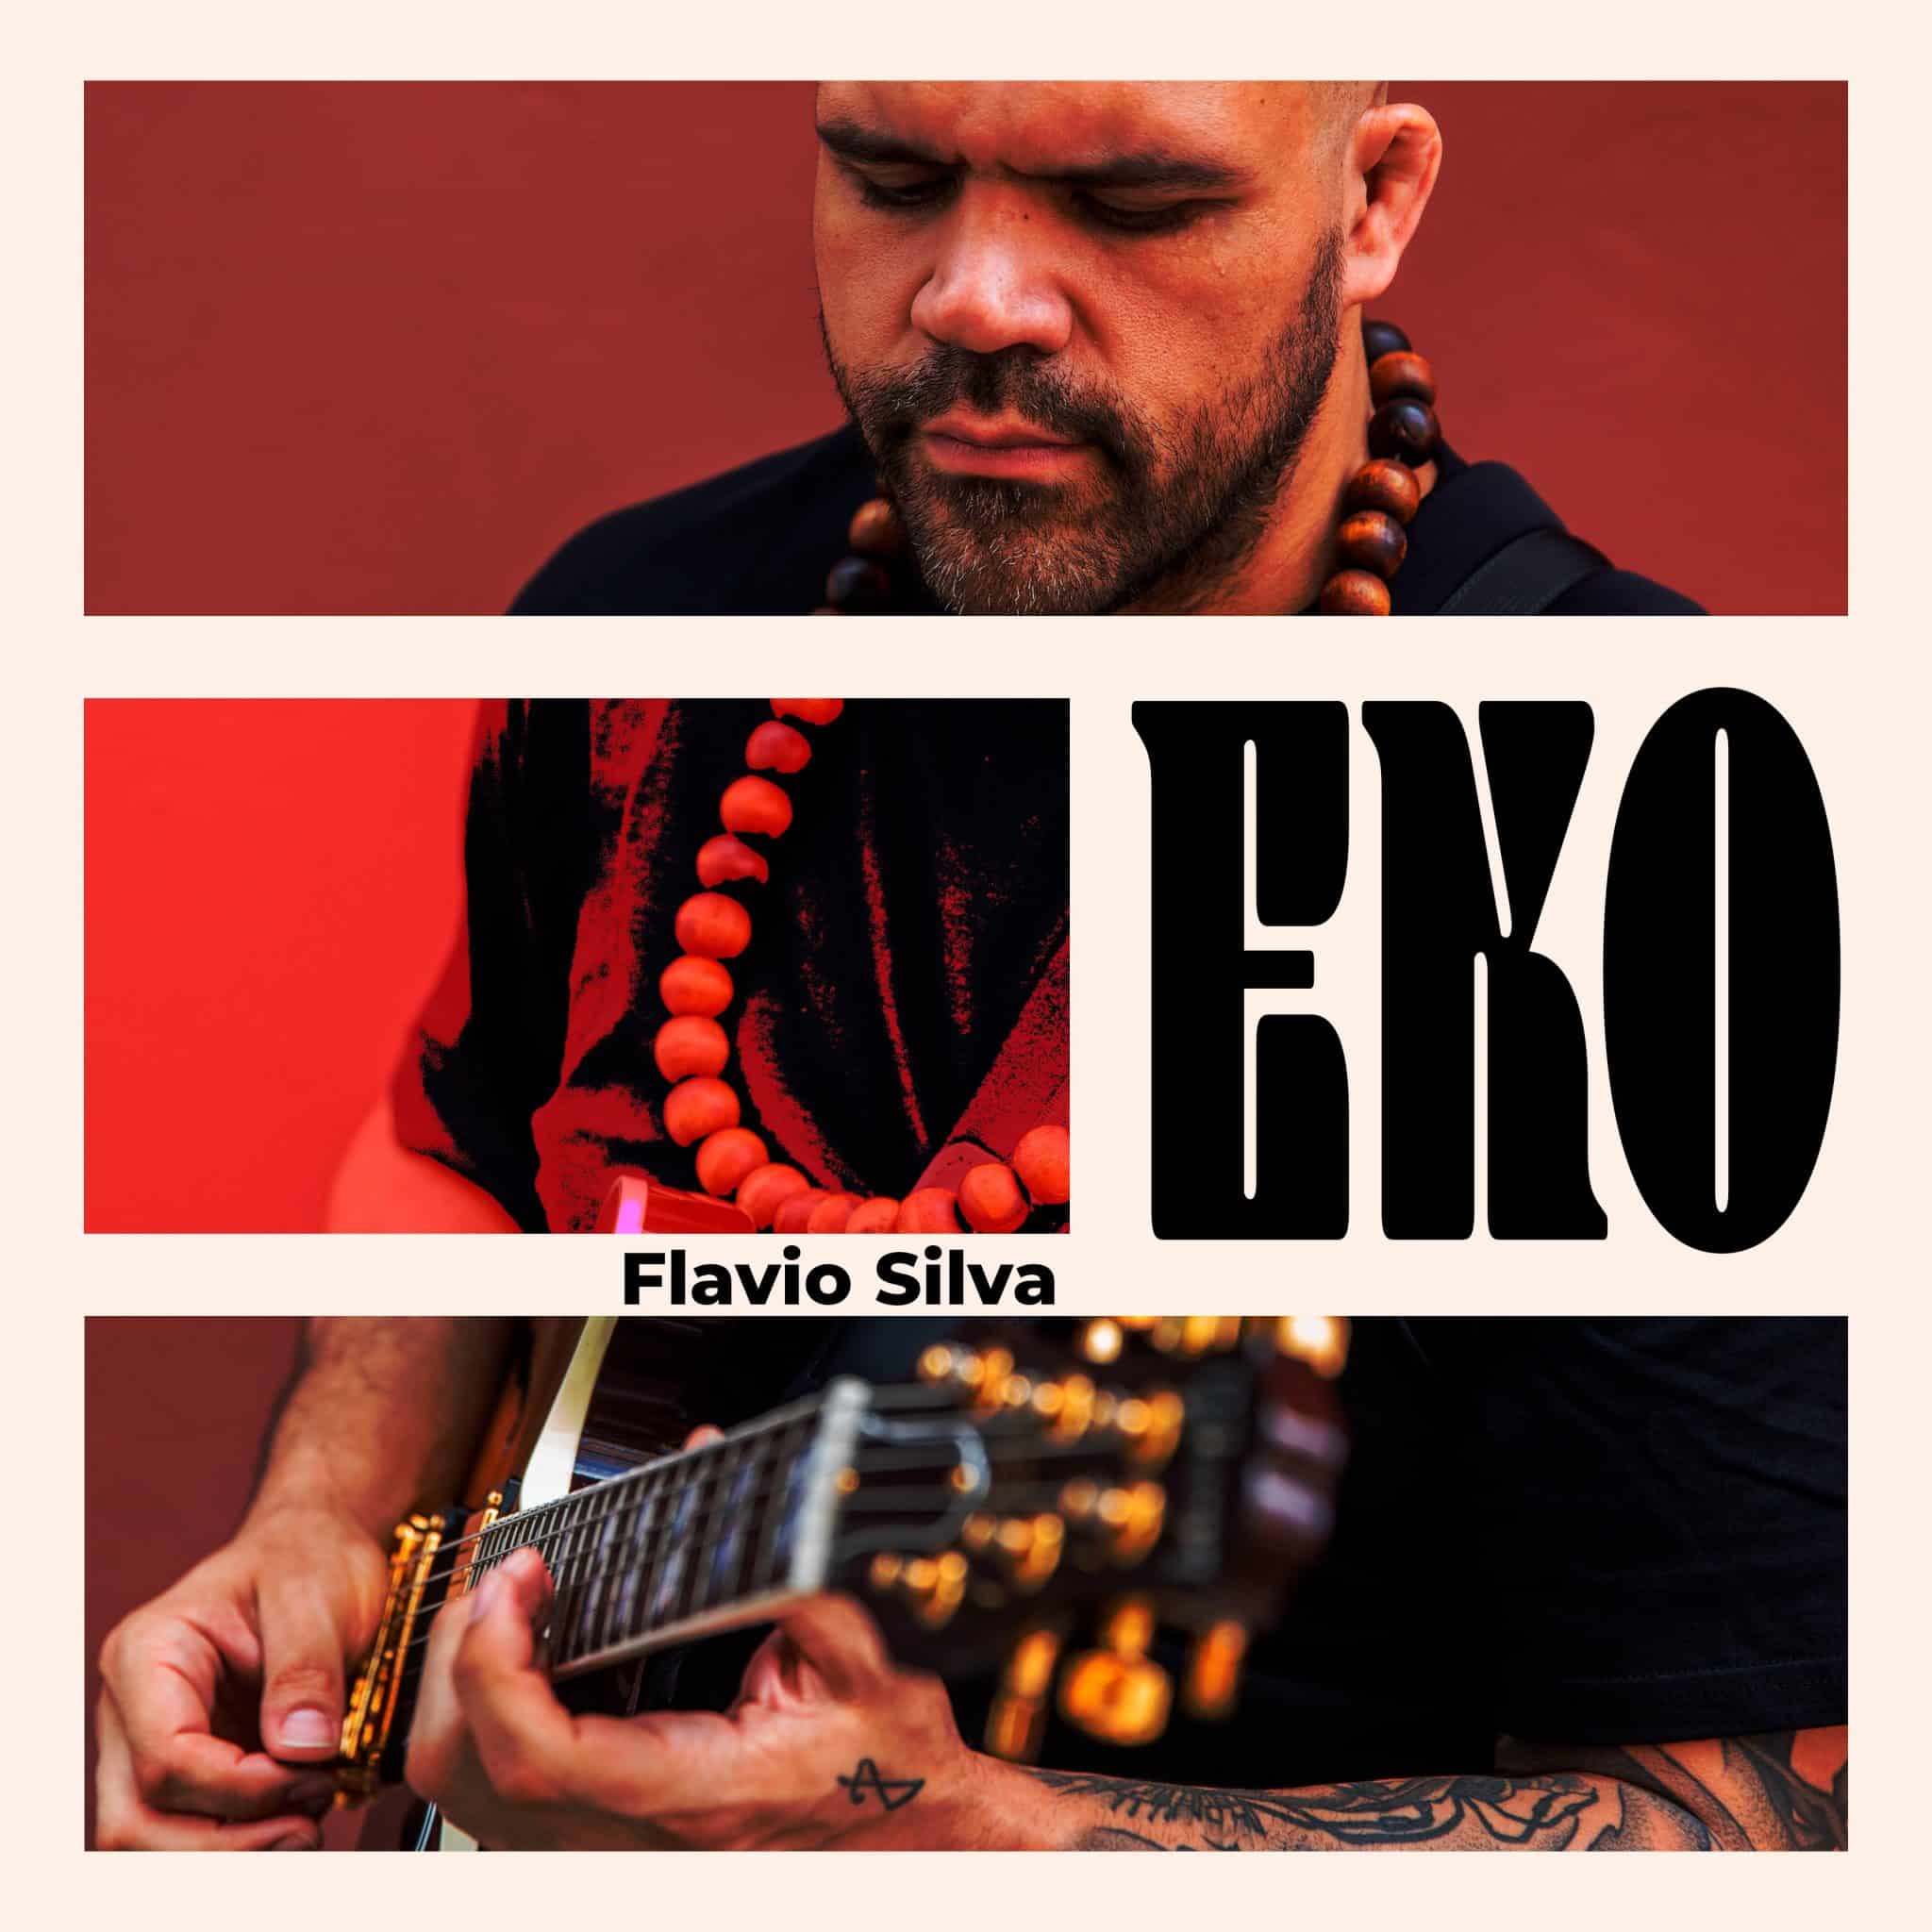 revistaprosaversoearte.com - Flávio Silva lança seu terceiro álbum 'Eko'